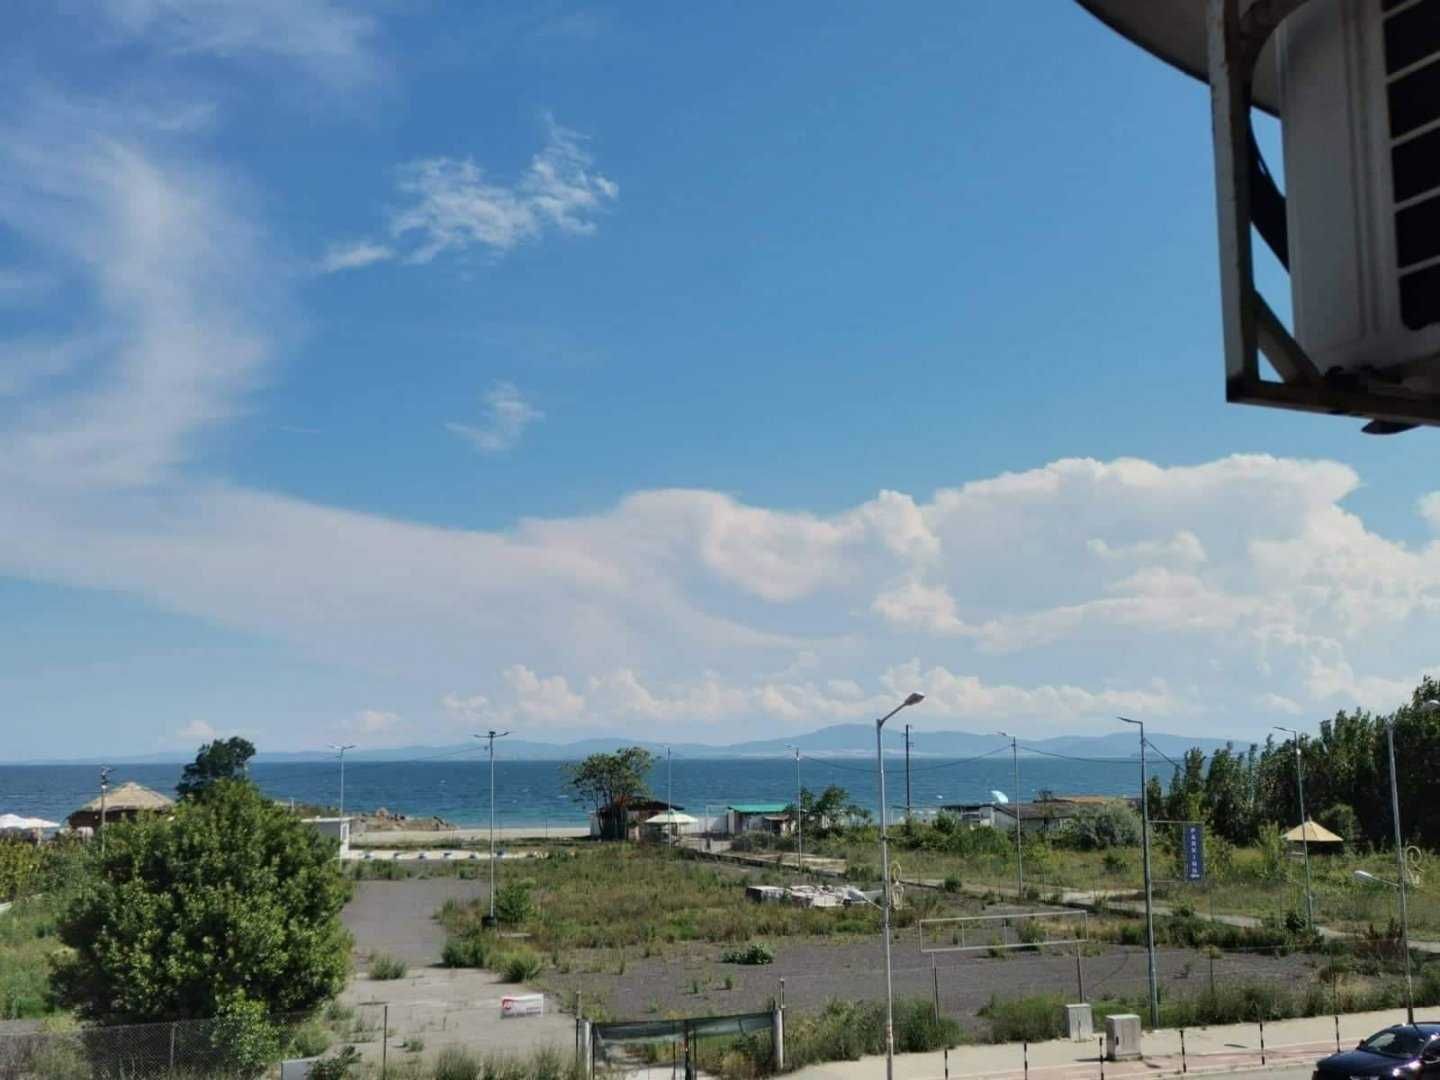 Тристаен апартамент с фронтална гледка към морето в Поморие!